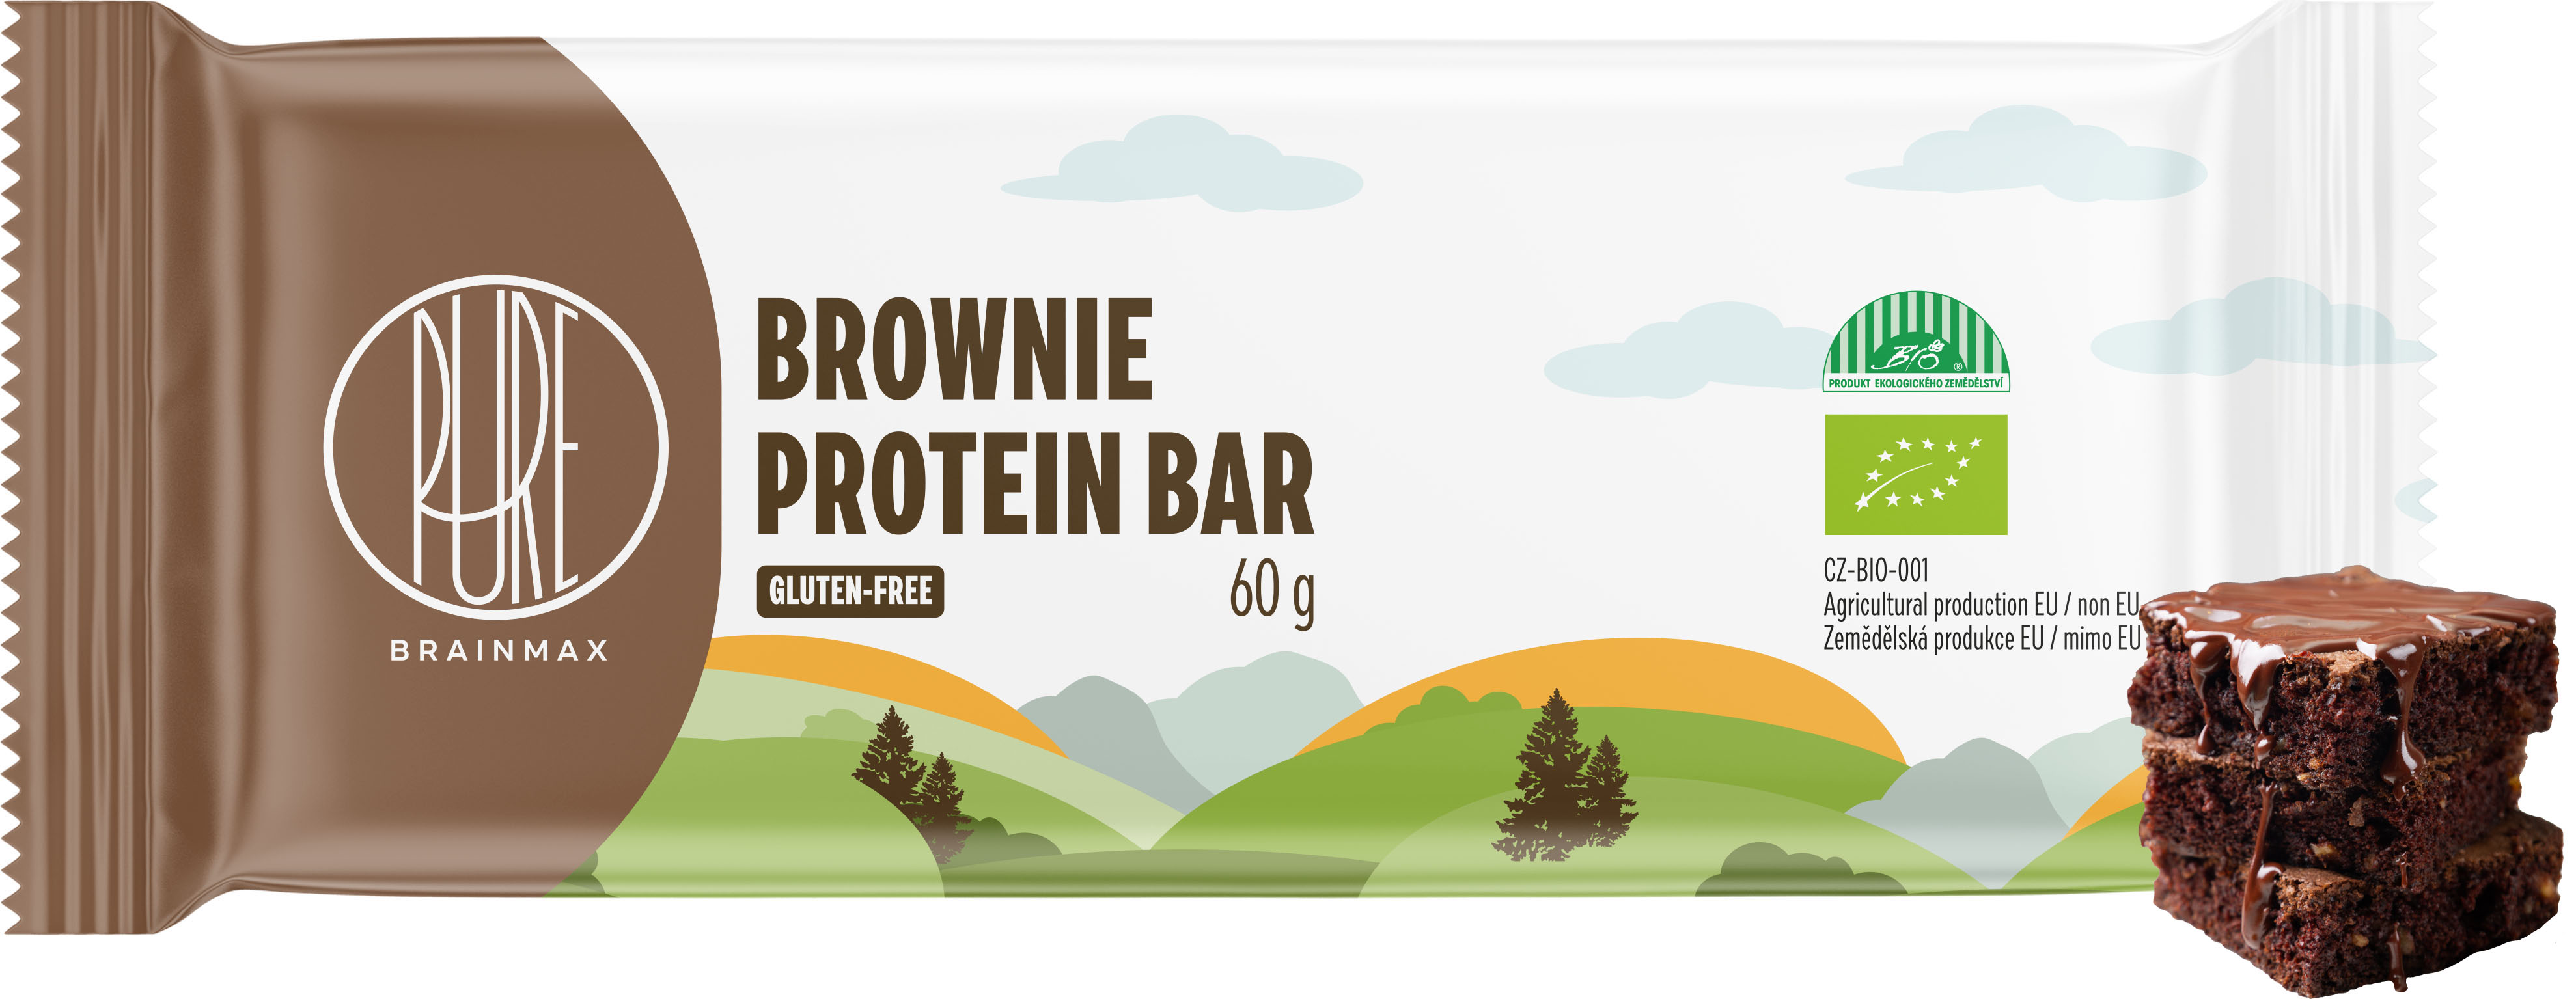 BrainMax Pure Proteinová tyčinka, Brownie, BIO, 60 g Protein Bar Brownie / *CZ-BIO-001 certifikát